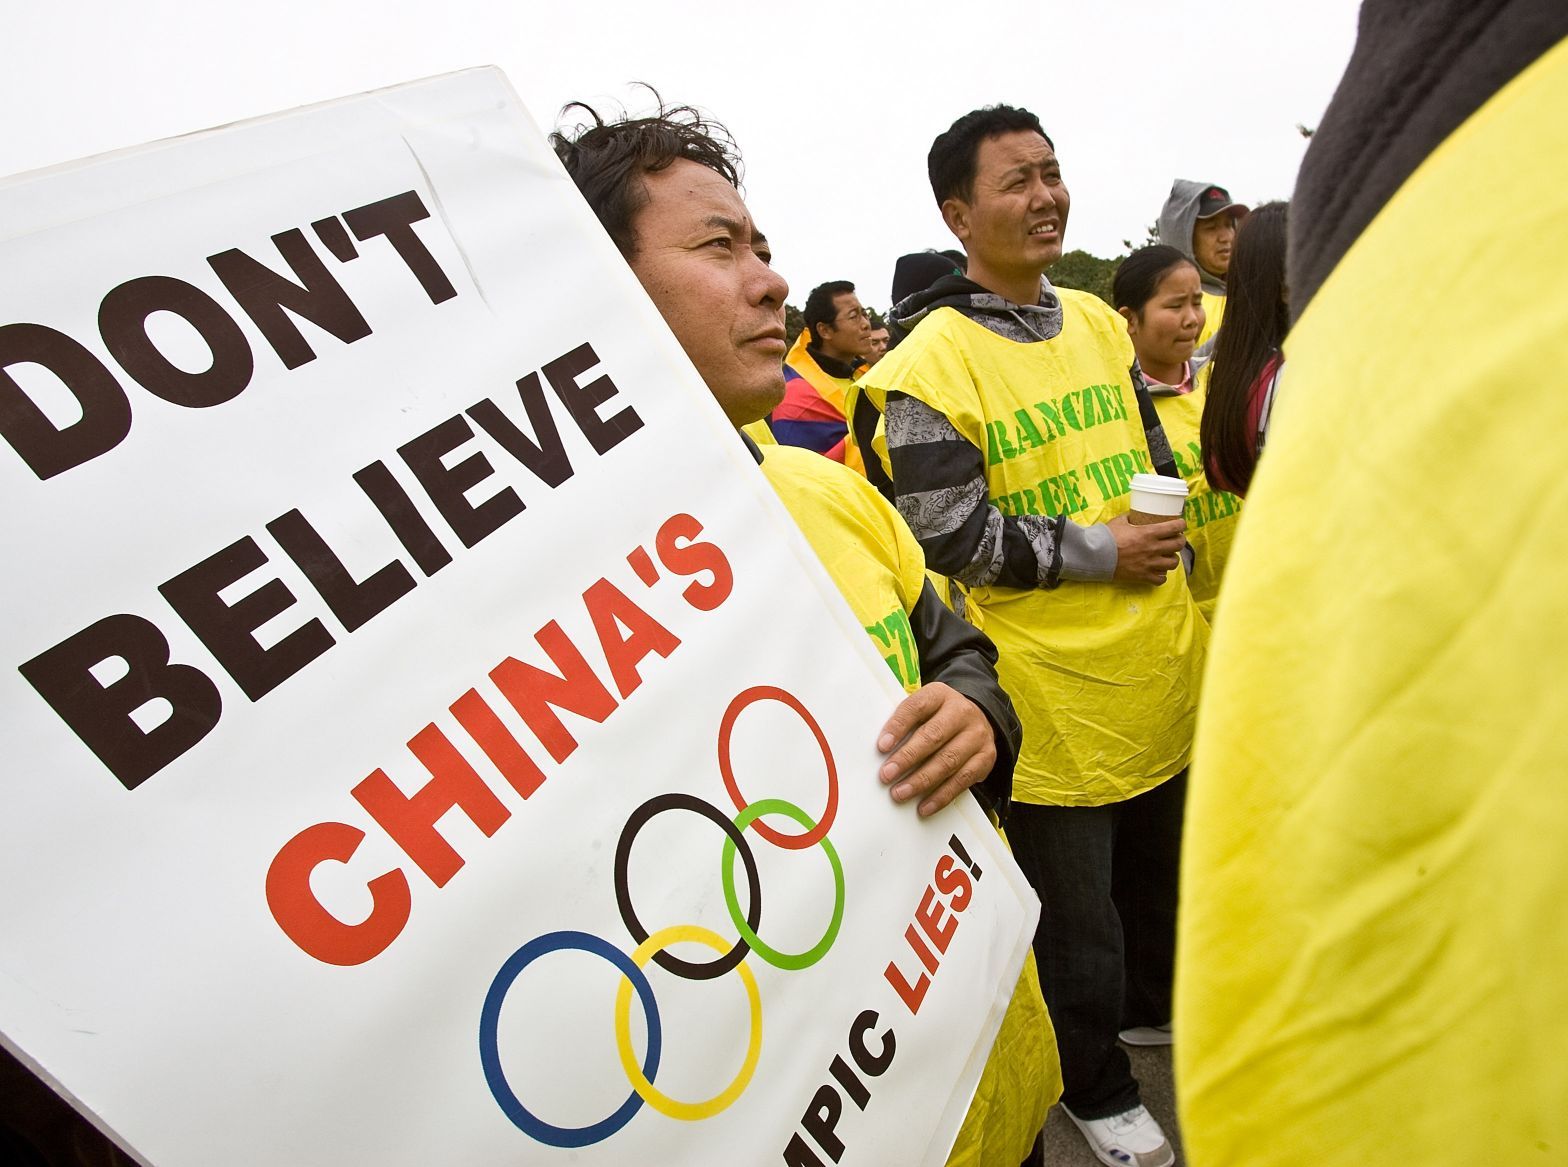 Olympische Spiele katastrophal für Meinungsfreiheit in China